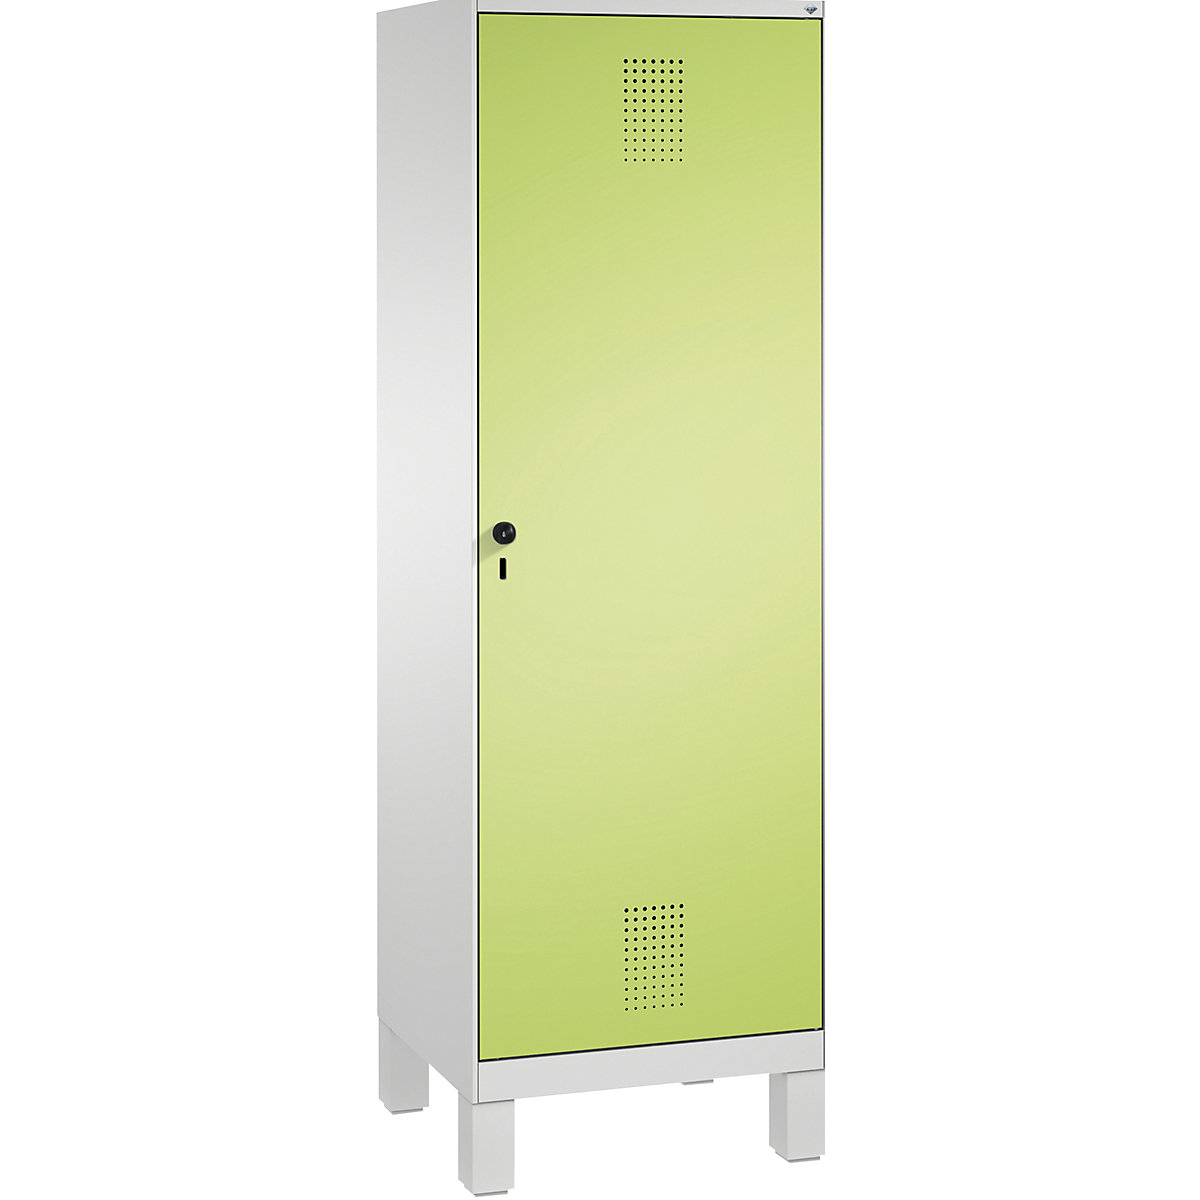 EVOLO Garderobenschrank, Tür über 2 Abteile, mit Füßen C+P, 2 Abteile, 1 Tür, Abteilbreite 300 mm, lichtgrau / viridingrün-11